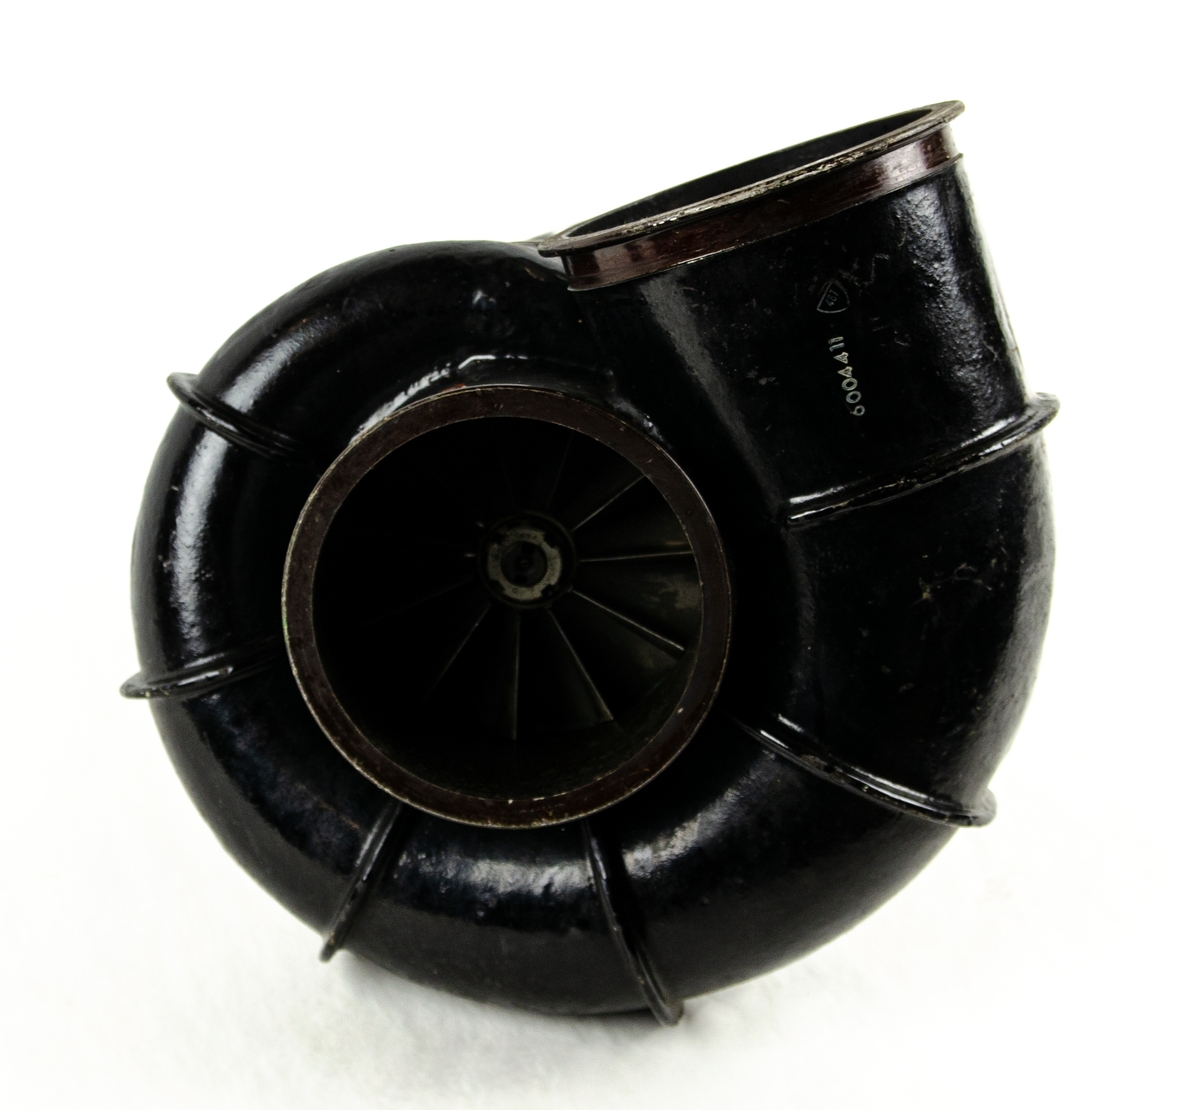 Kylturbin i metall, ovan- och underdel färgad i svart. Okänd flygplansmodell. Tillverkad av SAAB, nummer: 6004341-1.